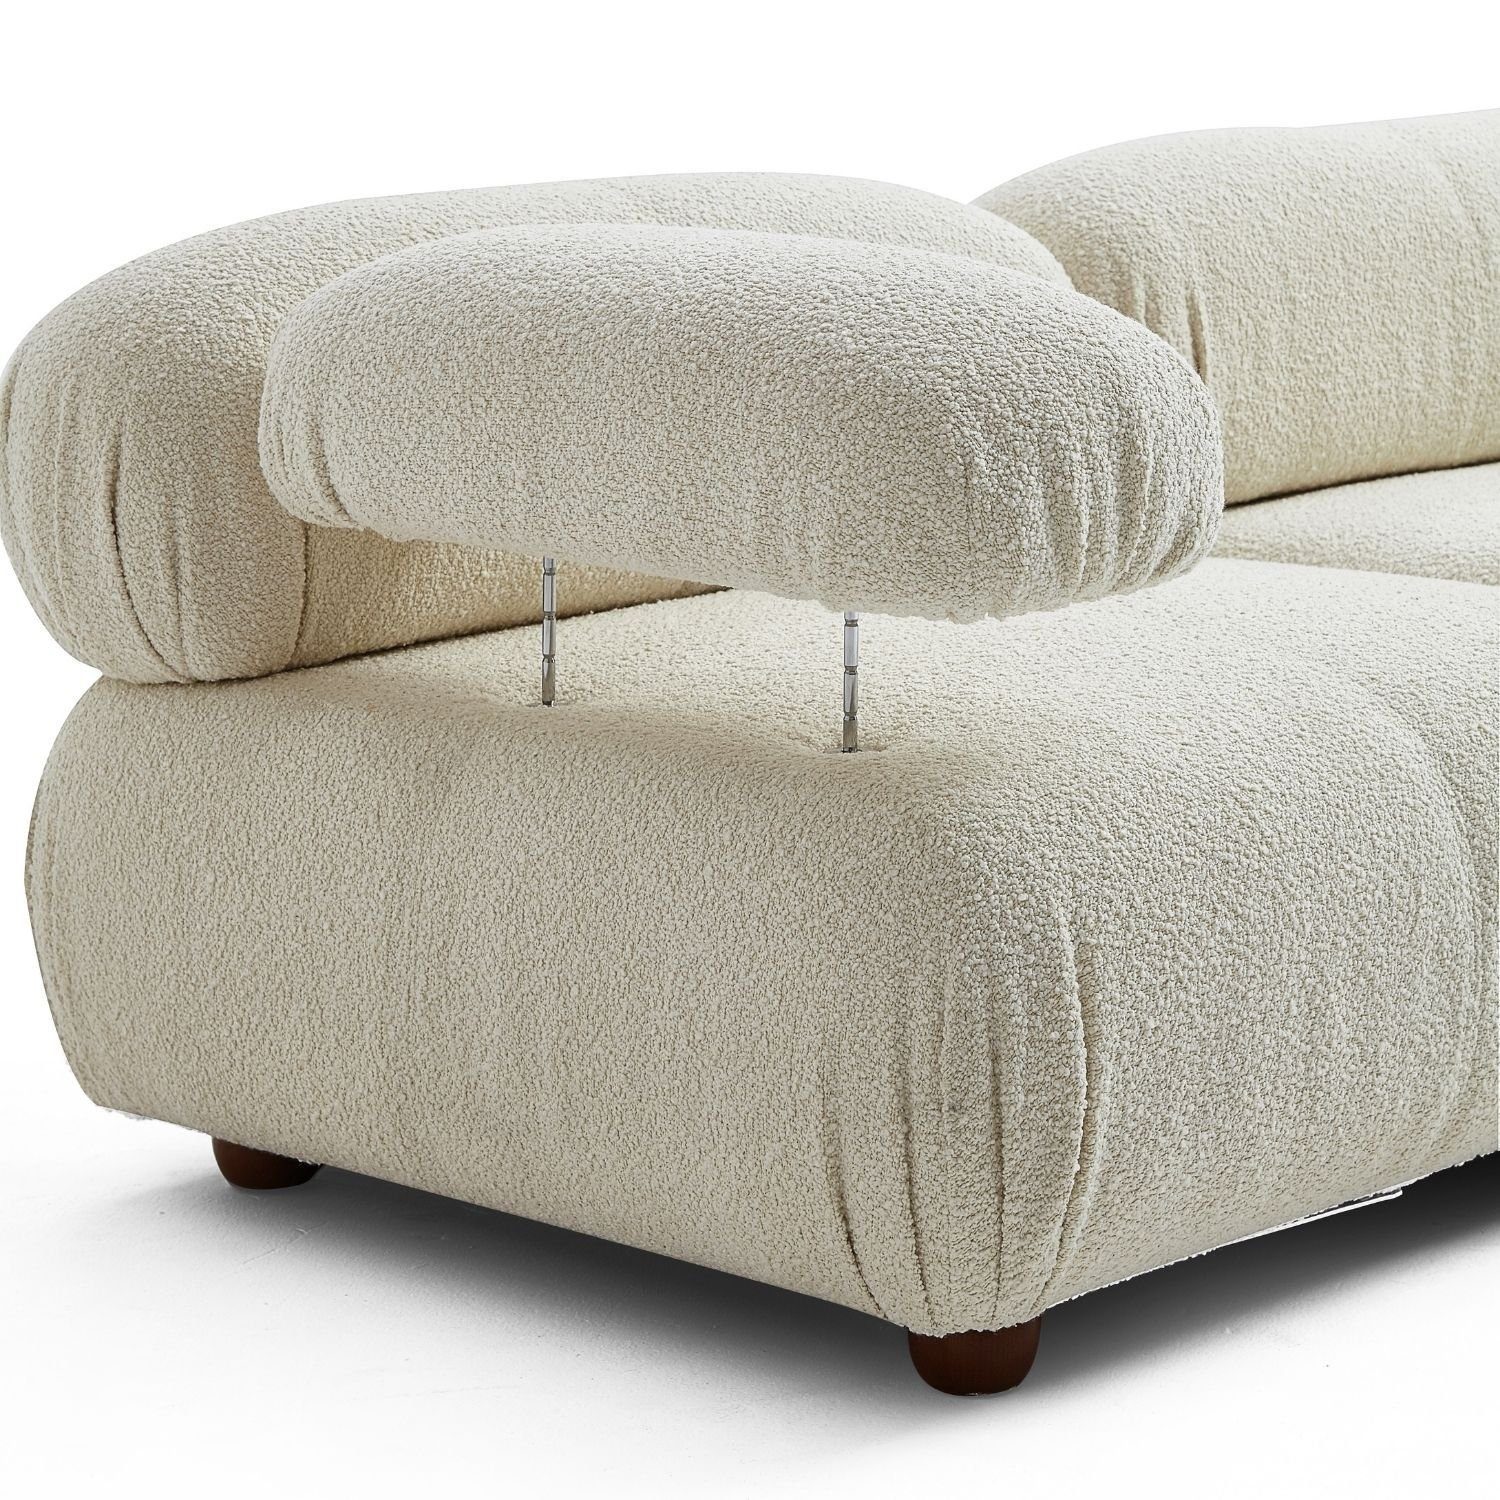 Touch Komfortschaum Sofa aus Aufbau Sitzmöbel Kirschrot-Lieferung und im Preis enthalten! neueste Knuffiges Generation me